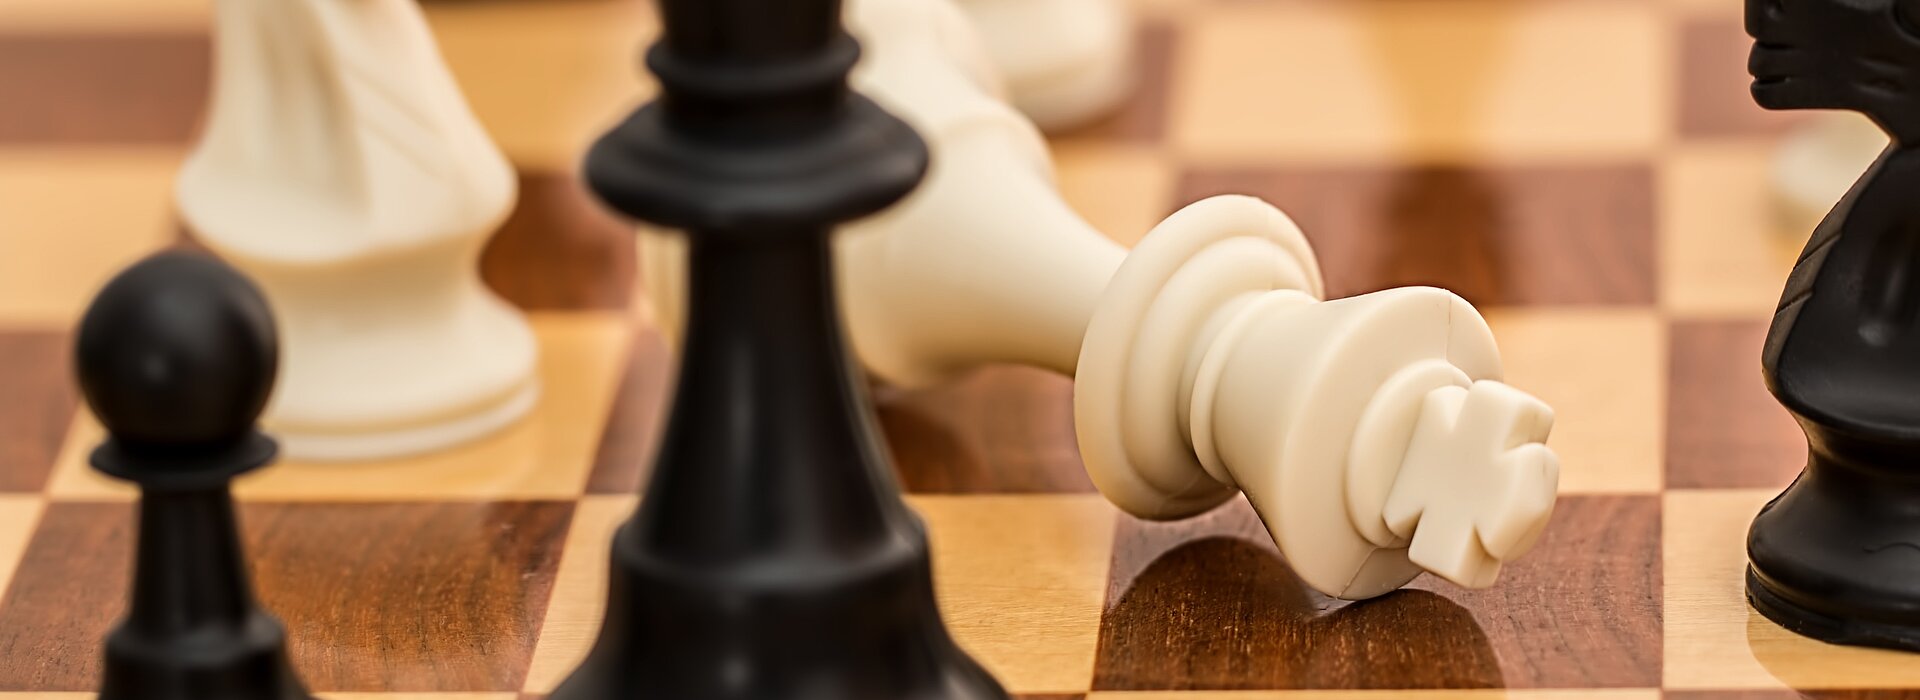 Tabuleiro de xadrez com o rei caído, fim do jogo